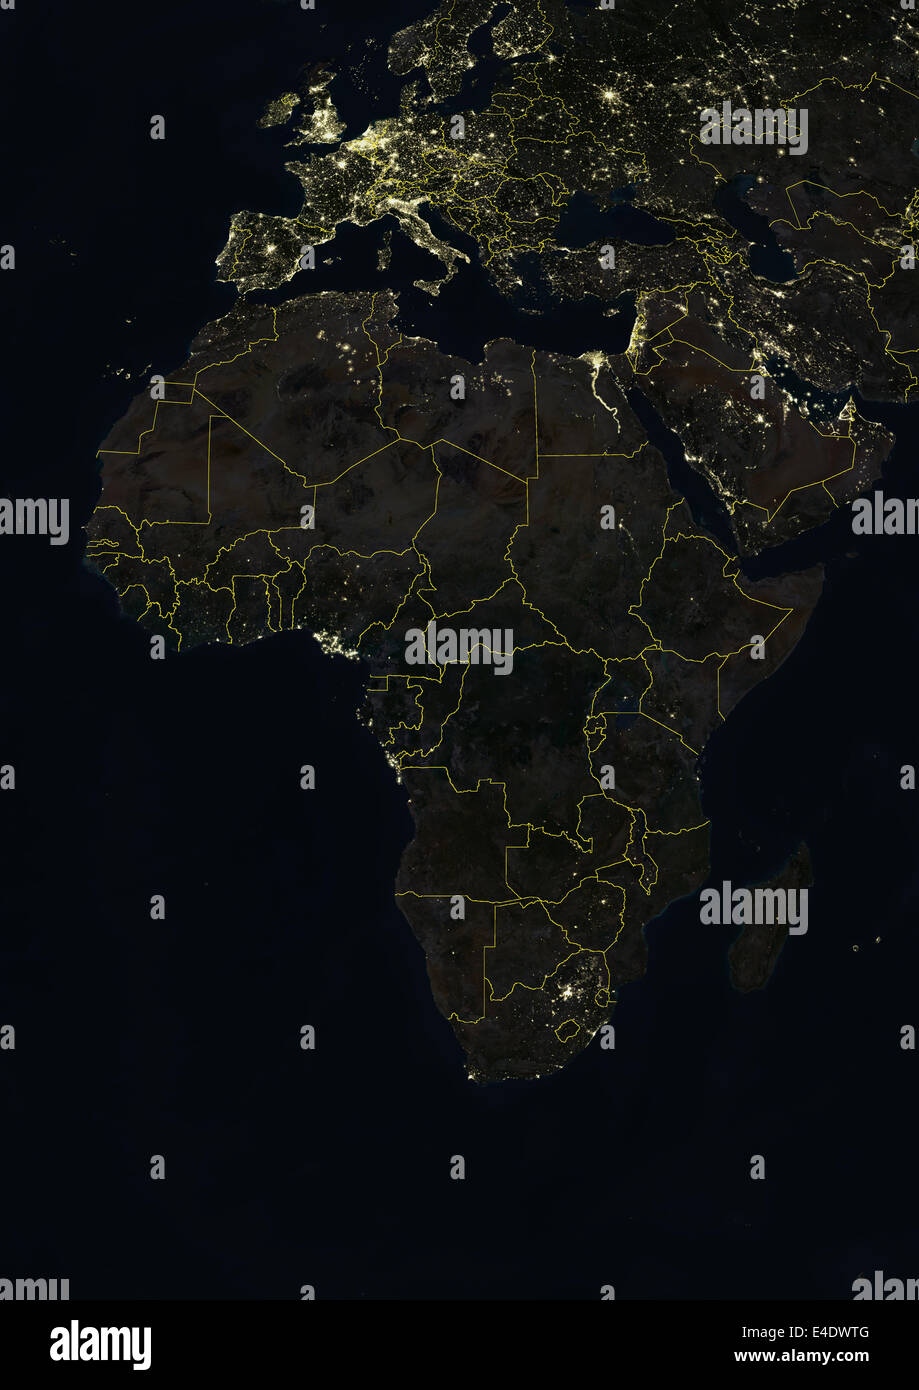 Afrika in der Nacht mit Landesgrenzen, wahre Farbe Satellitenbild. Echtfarben-Satellitenbild von Afrika in der Nacht mit Land b Stockfoto